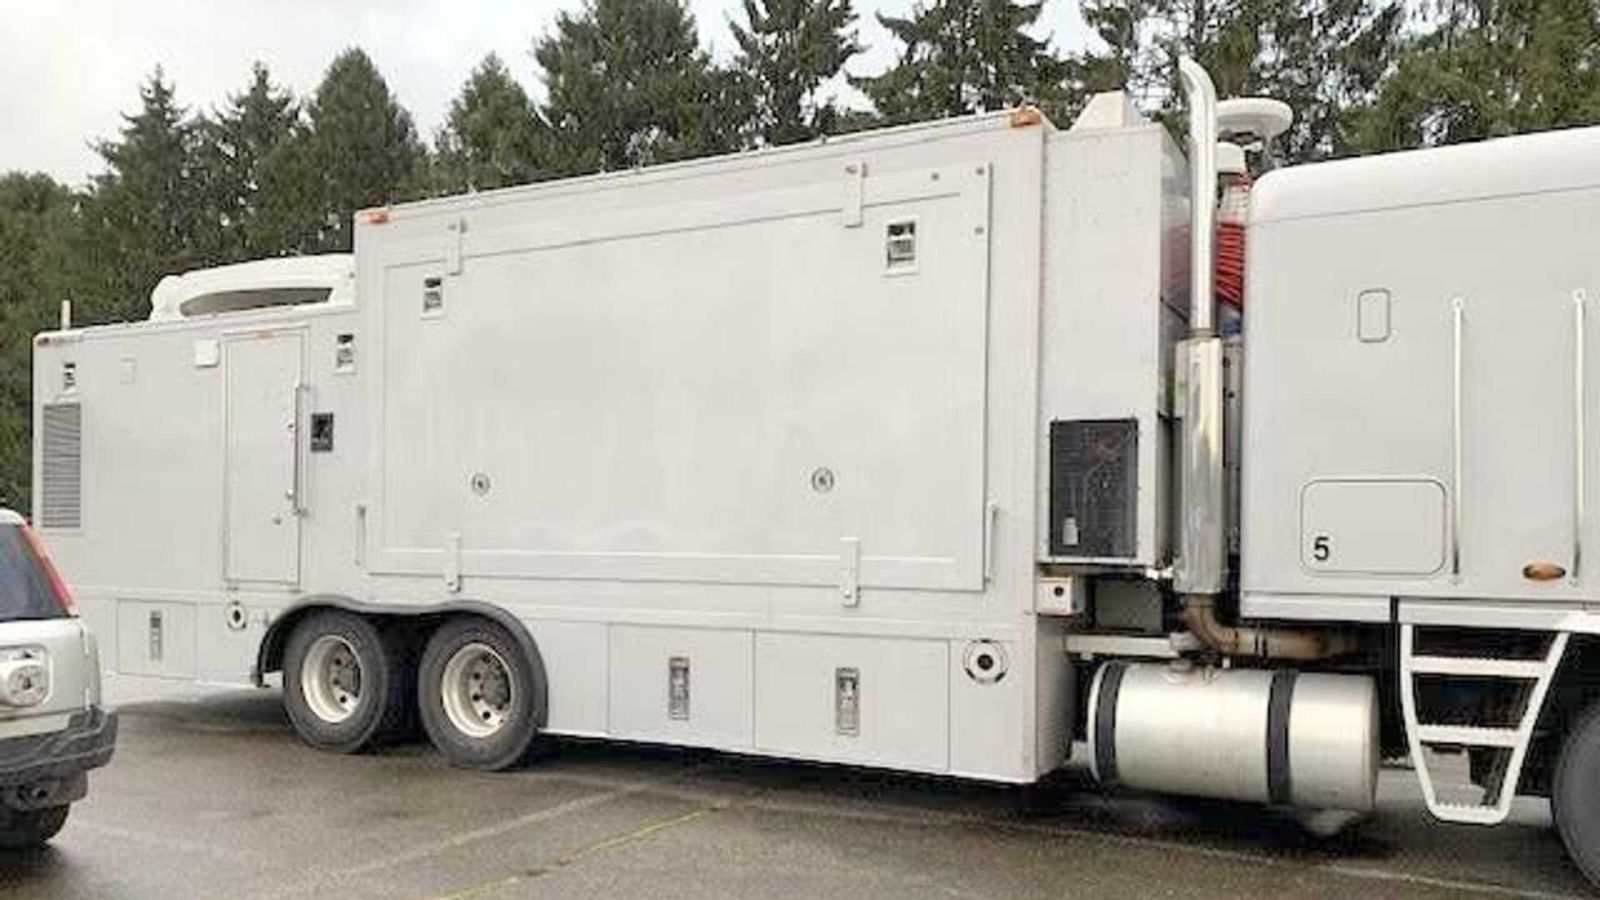 Freightliner Argosy Mobilný dom snov. 12,8 m dlhý FBI kamión ako základ je to pravé orechové! Extrémne rozmery a obrovský potenciál využitia priestoru. Ako bonus zaujímavé výhody FBI kamiónu! 